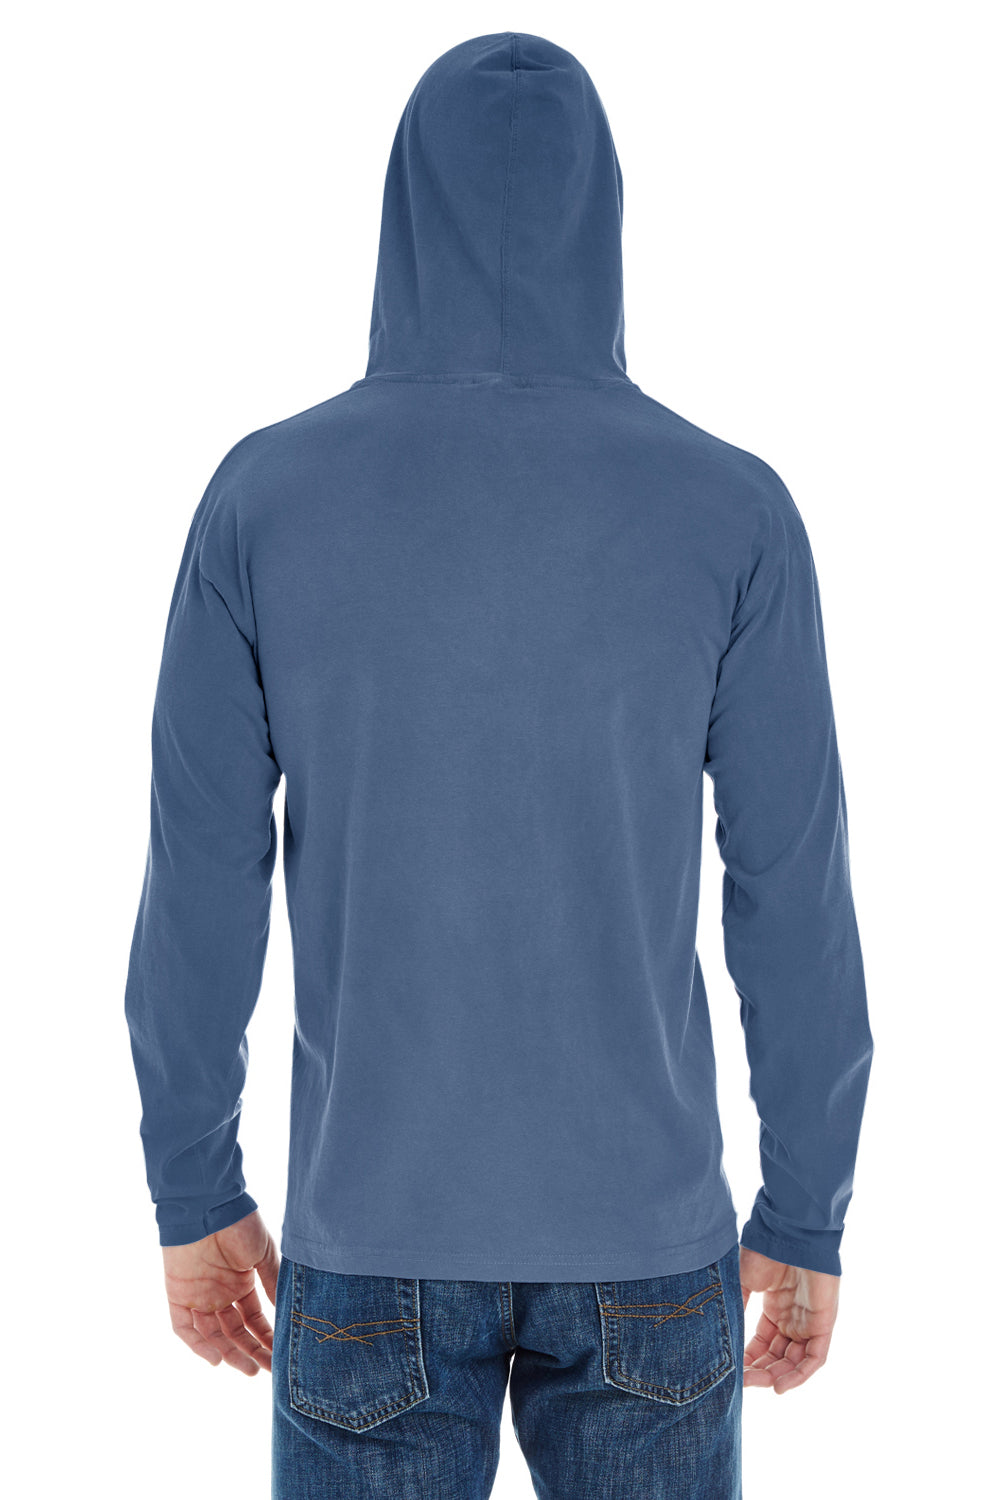 Comfort Colors 4900 Mens Long Sleeve Hooded T-Shirt Hoodie Blue Jean Back